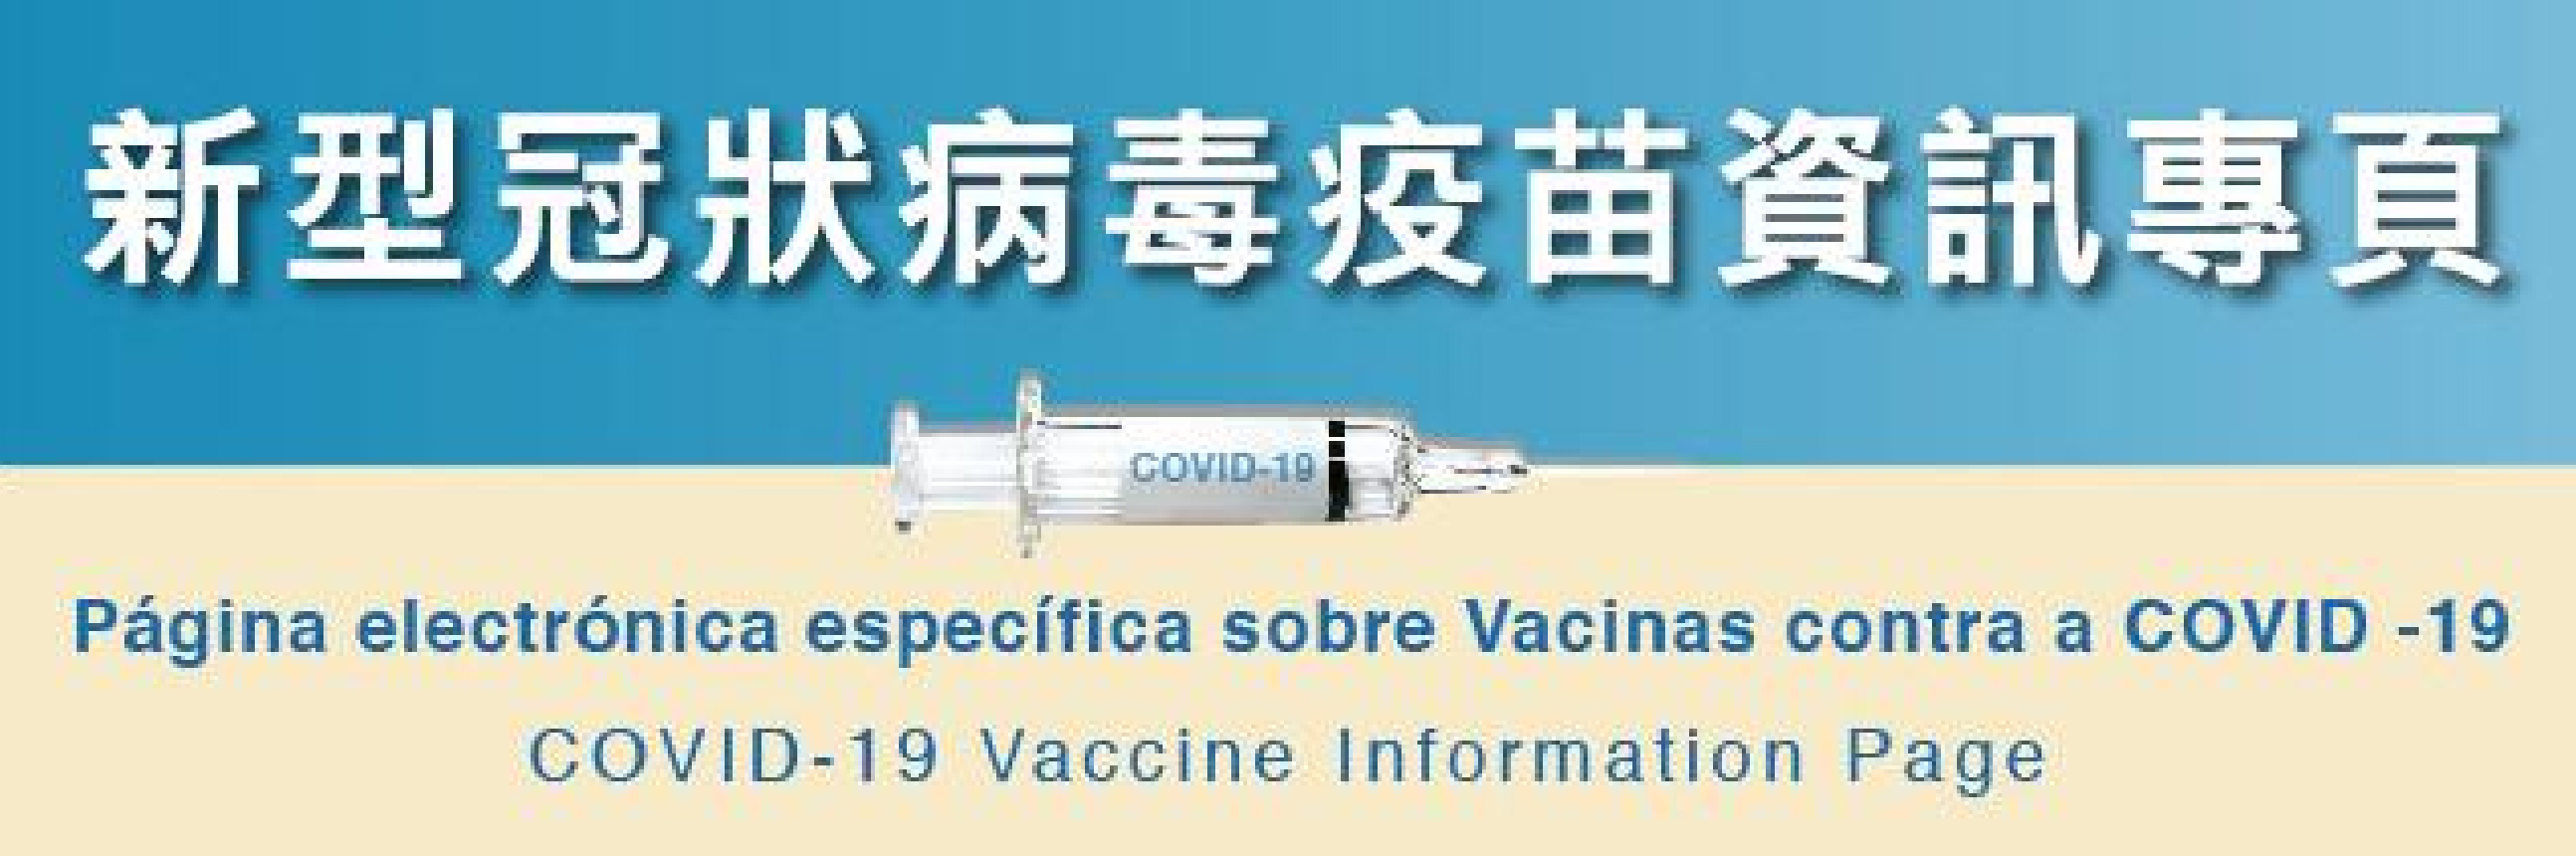 新型冠狀病毒疫苗專頁